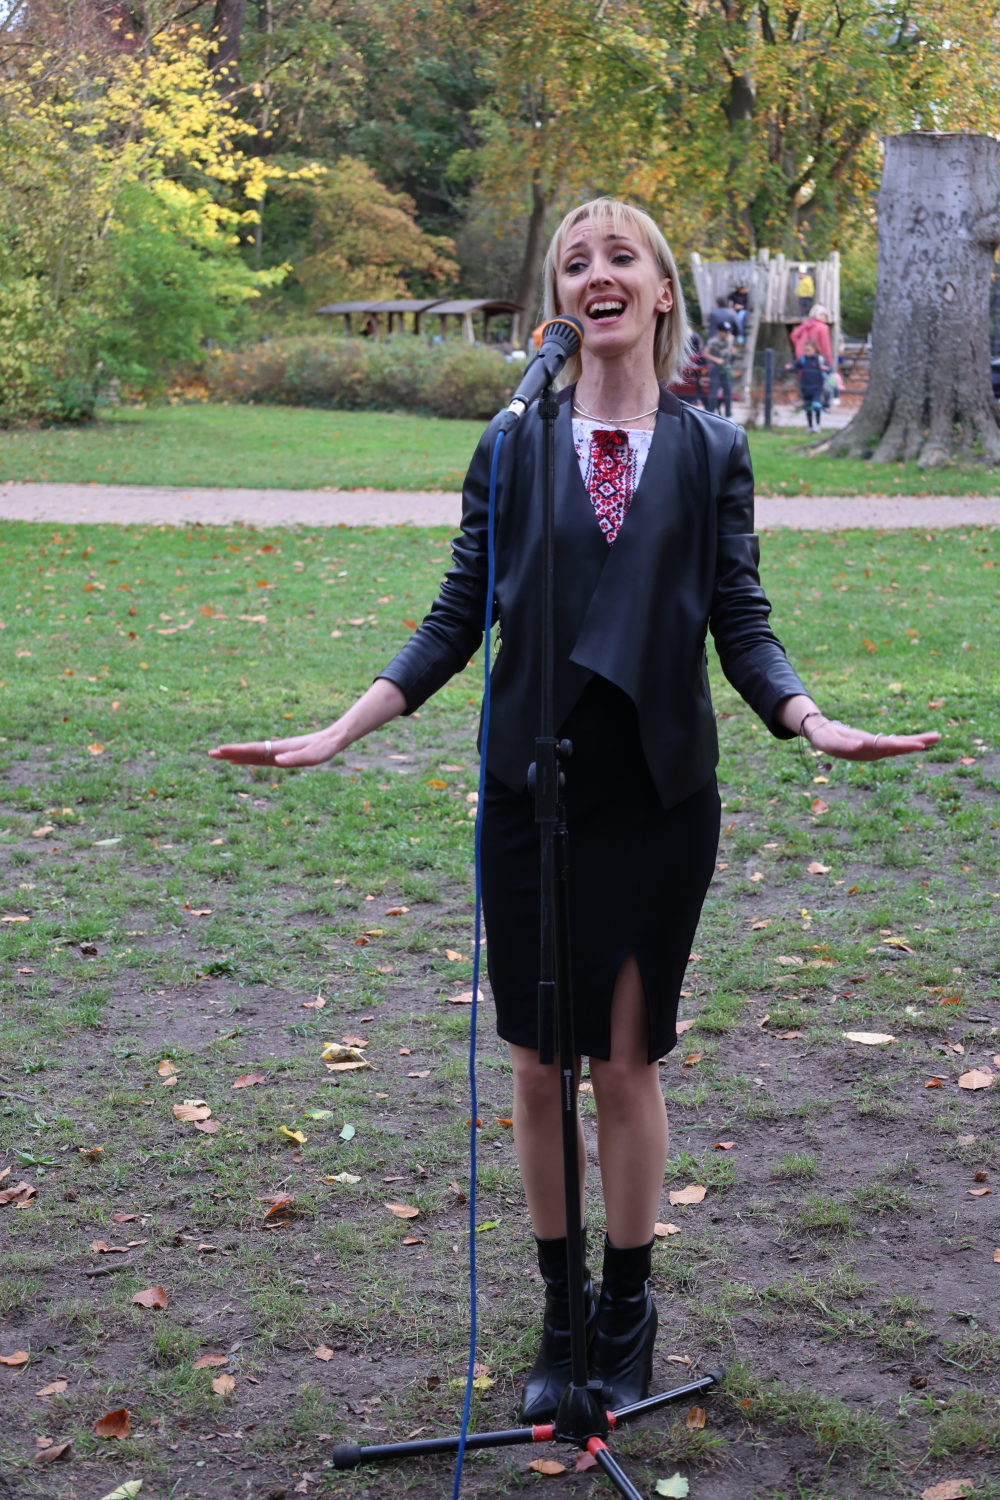 Sängerin Anna Konstantinova aus der Ukraine bei der Benennung des Charkiw-Parks in Steglitz (24.10.2022)